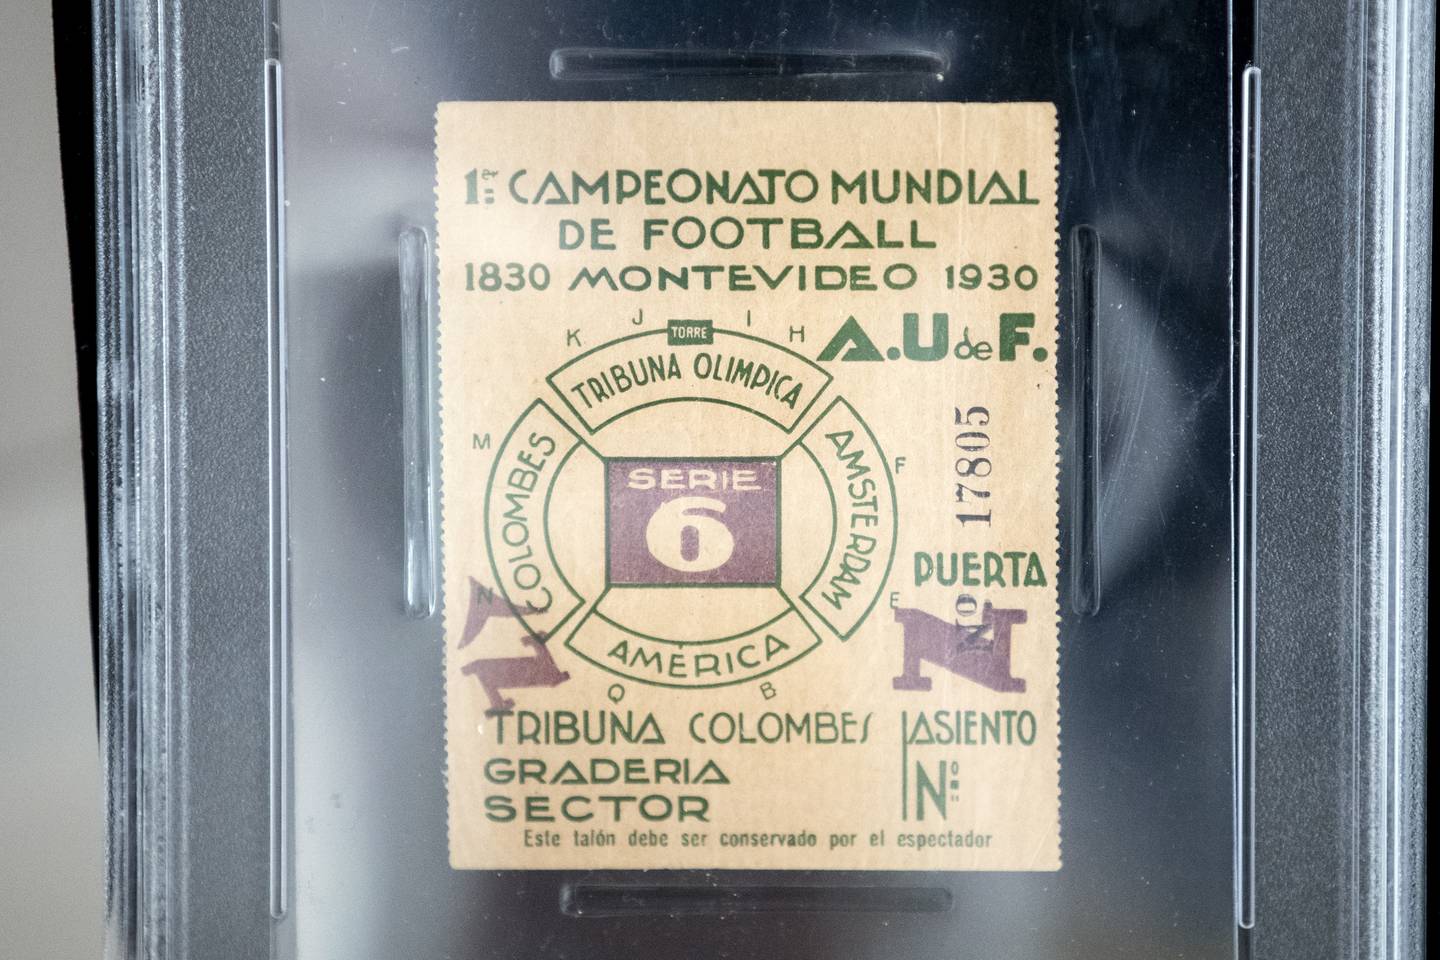 Un talon de billet pour la demi-finale de la Coupe du monde de 1930 exposé lors d'une vente aux enchères de sports à Beverly Hills, en Californie.  APE